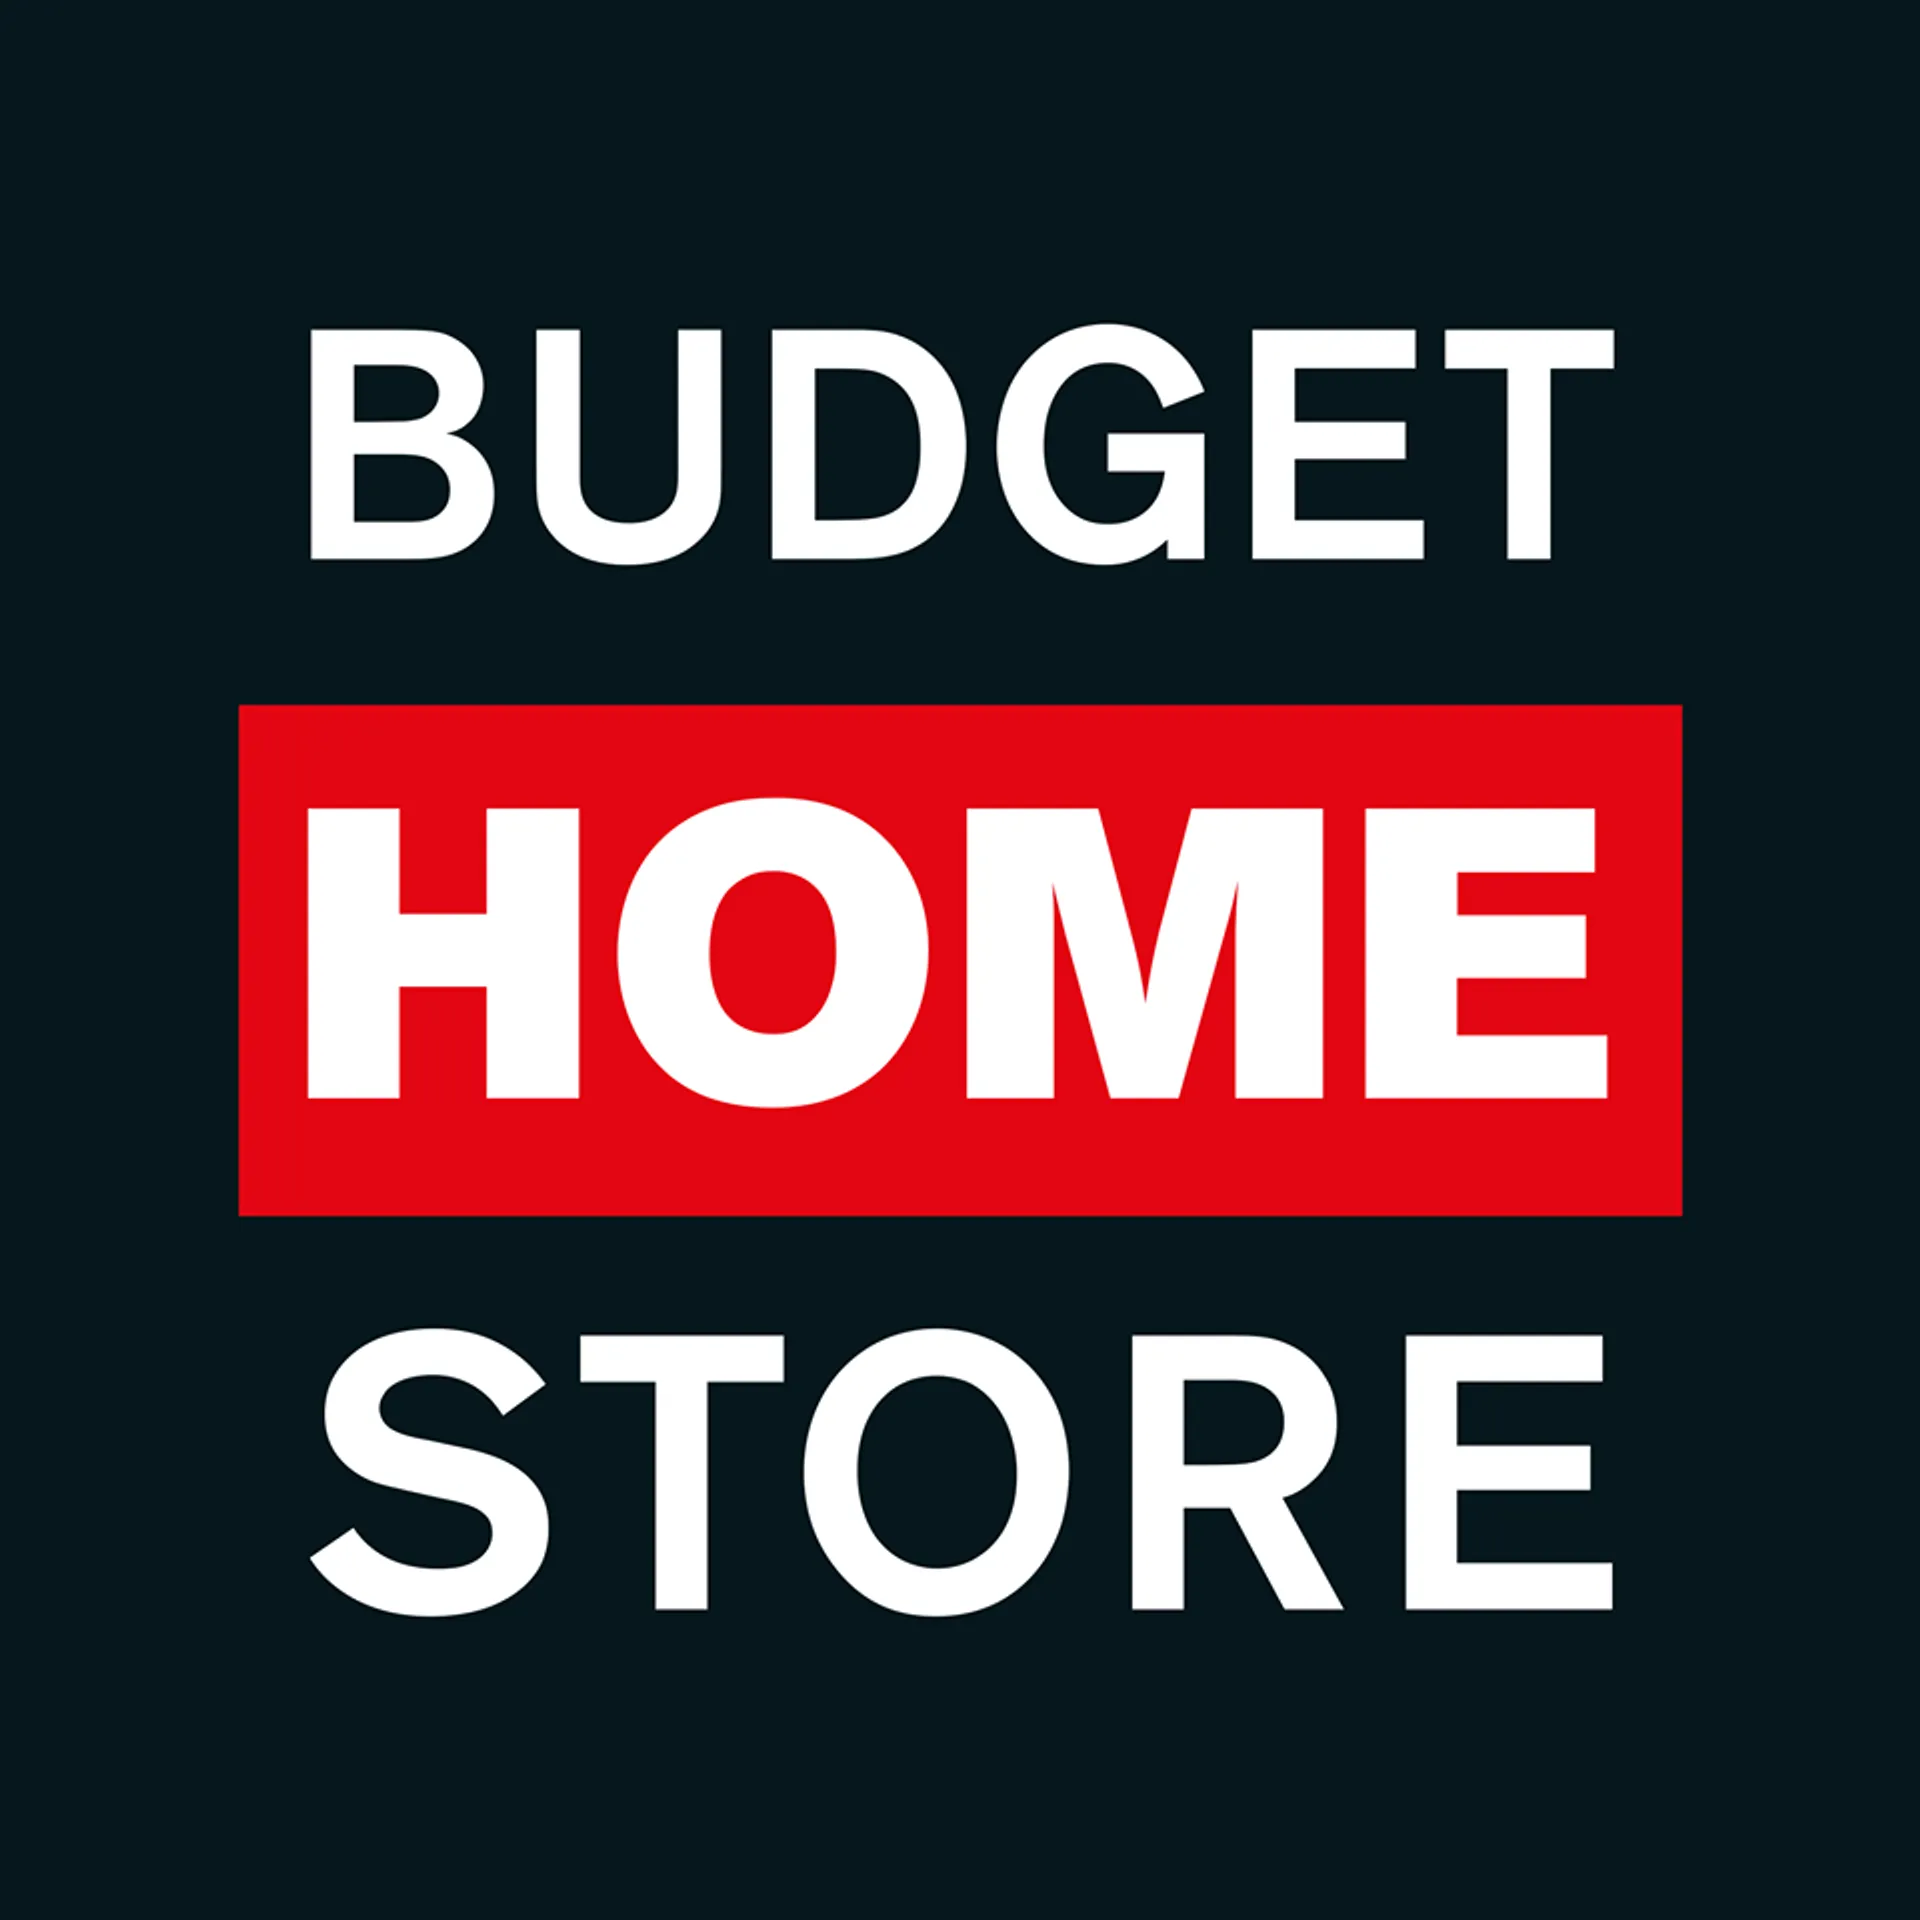 BUDGET HOME STORE logo